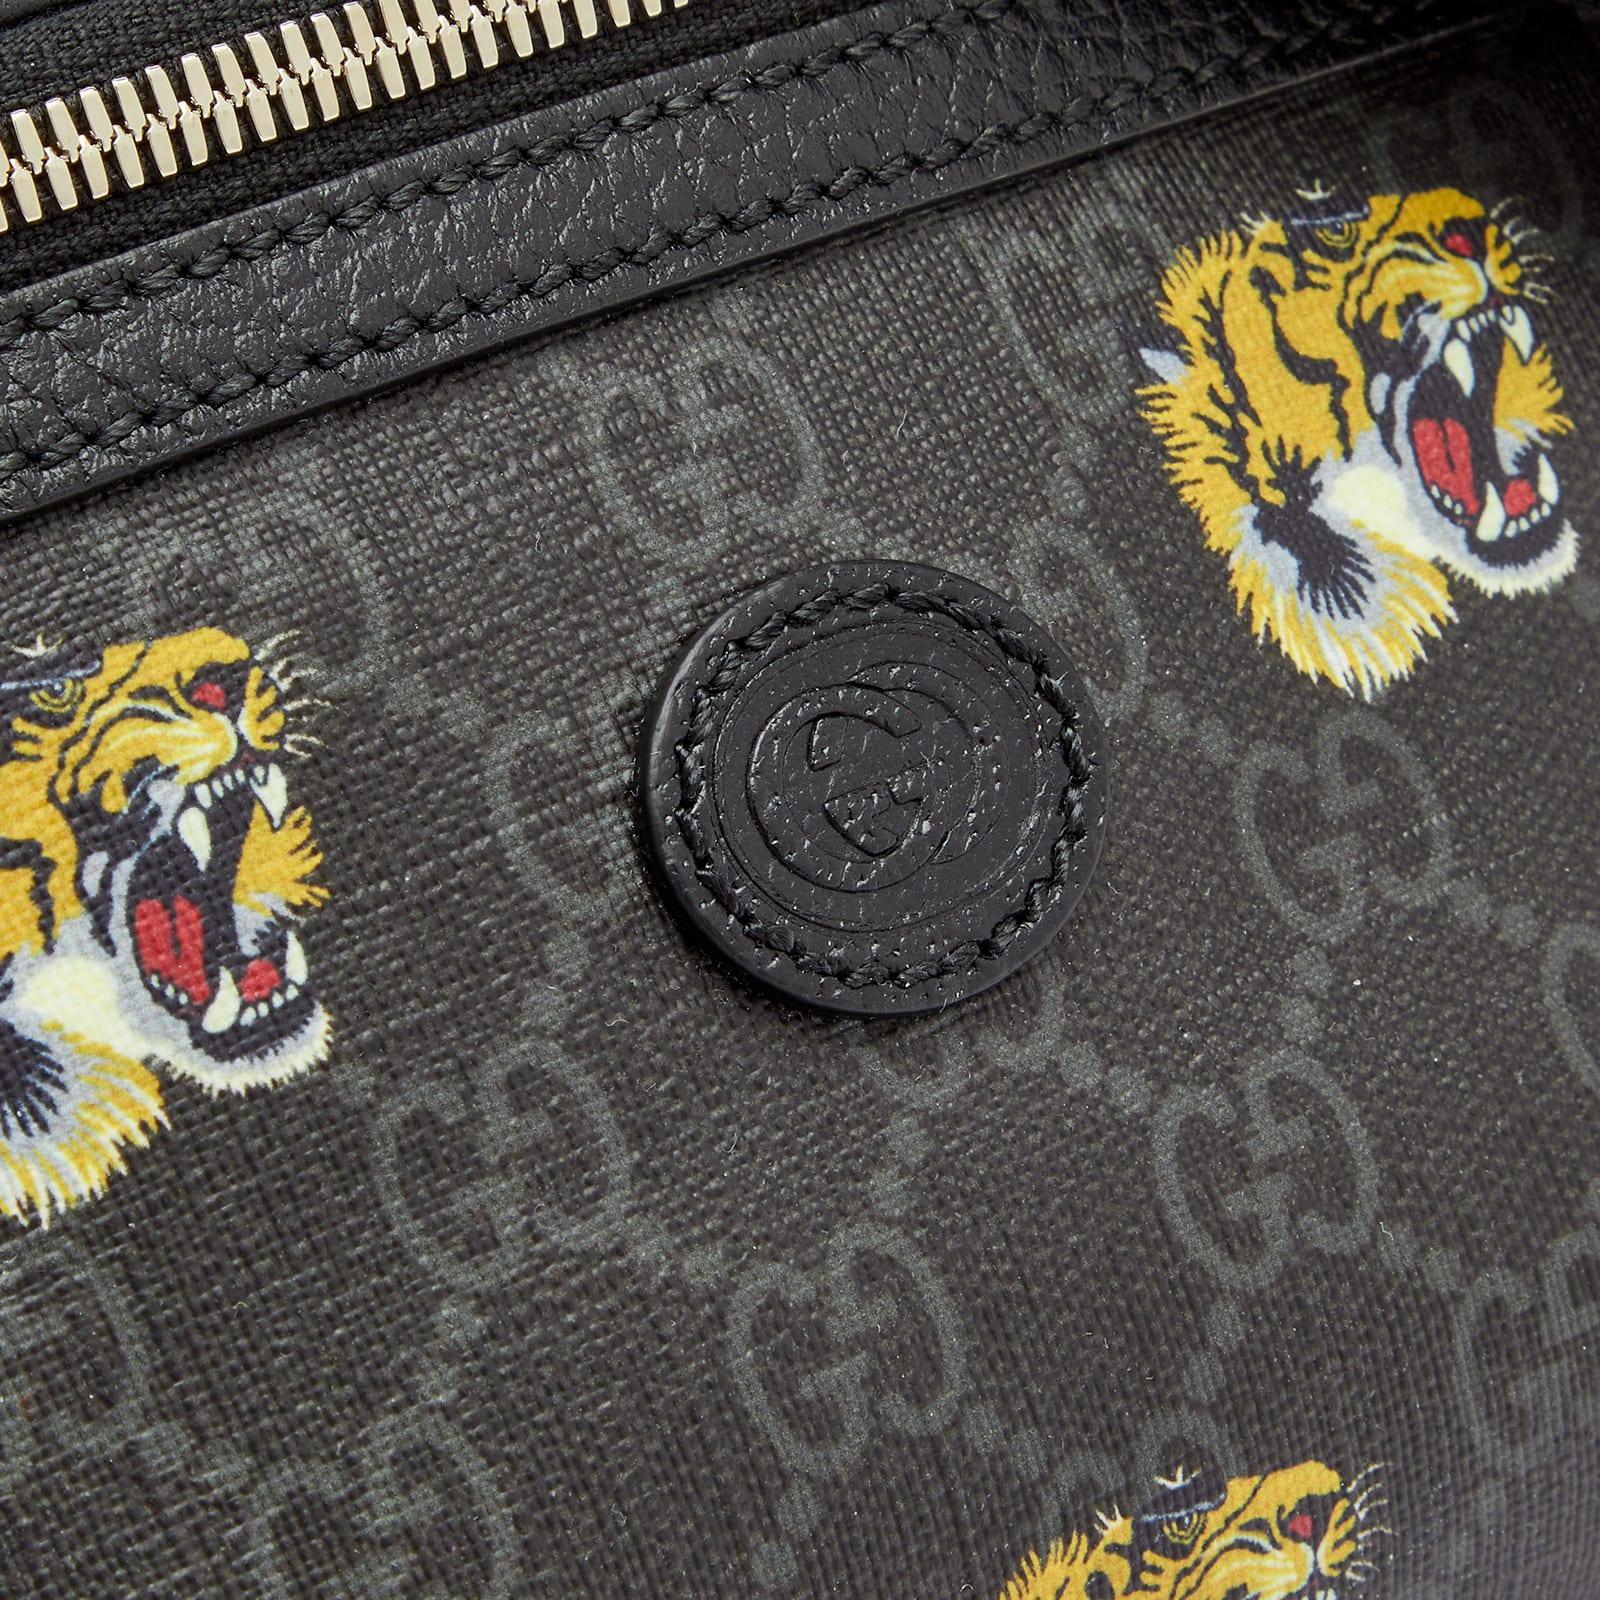 Buy Gucci Black GG Supreme Tiger-Print Messenger Bag for MEN in Oman